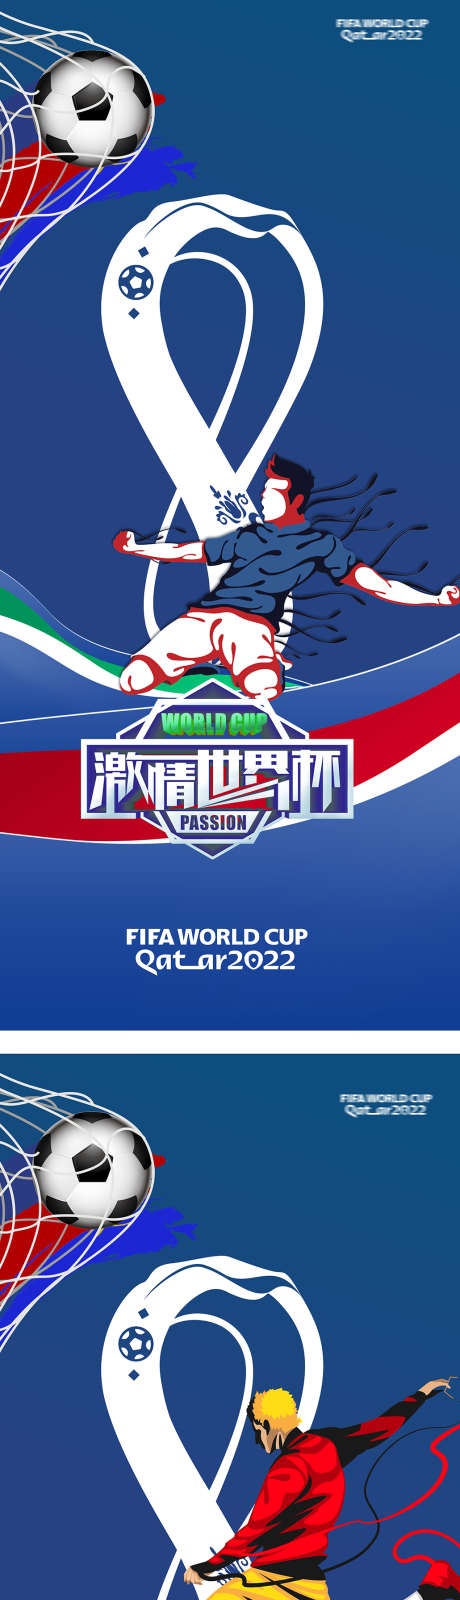 2022卡塔尔世界杯足球赛竞技海报_源文件下载_1030X4693像素-欧冠,竞技,足球赛,世界杯,卡塔尔,2022,海报-作品编号:2023052915144904-源文件库-ywjfx.cn